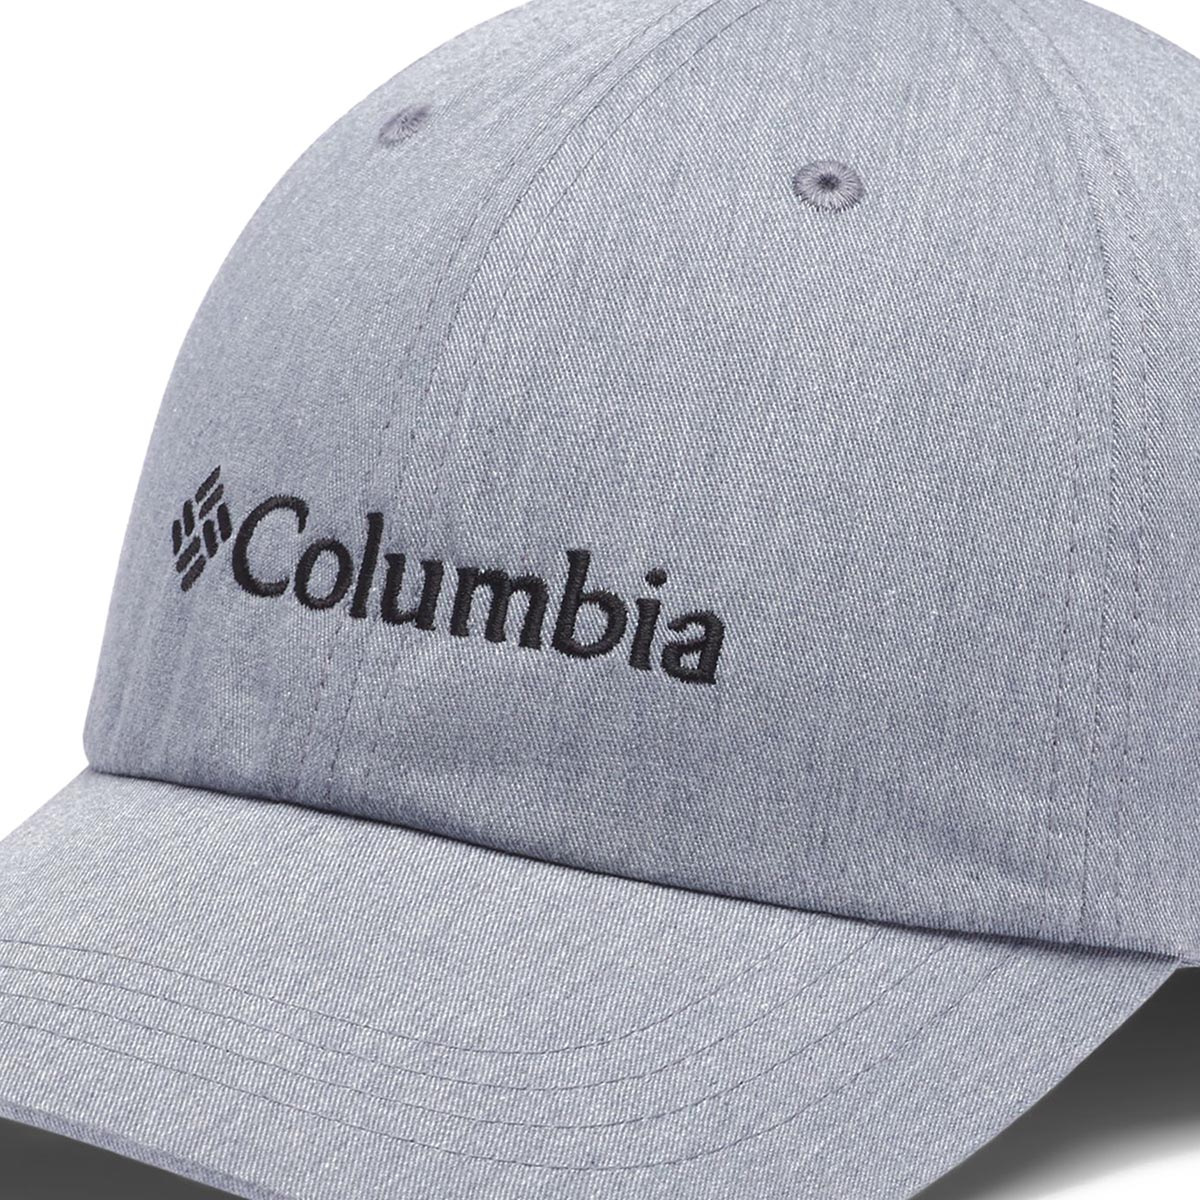 COLUMBIA - ROC II HAT